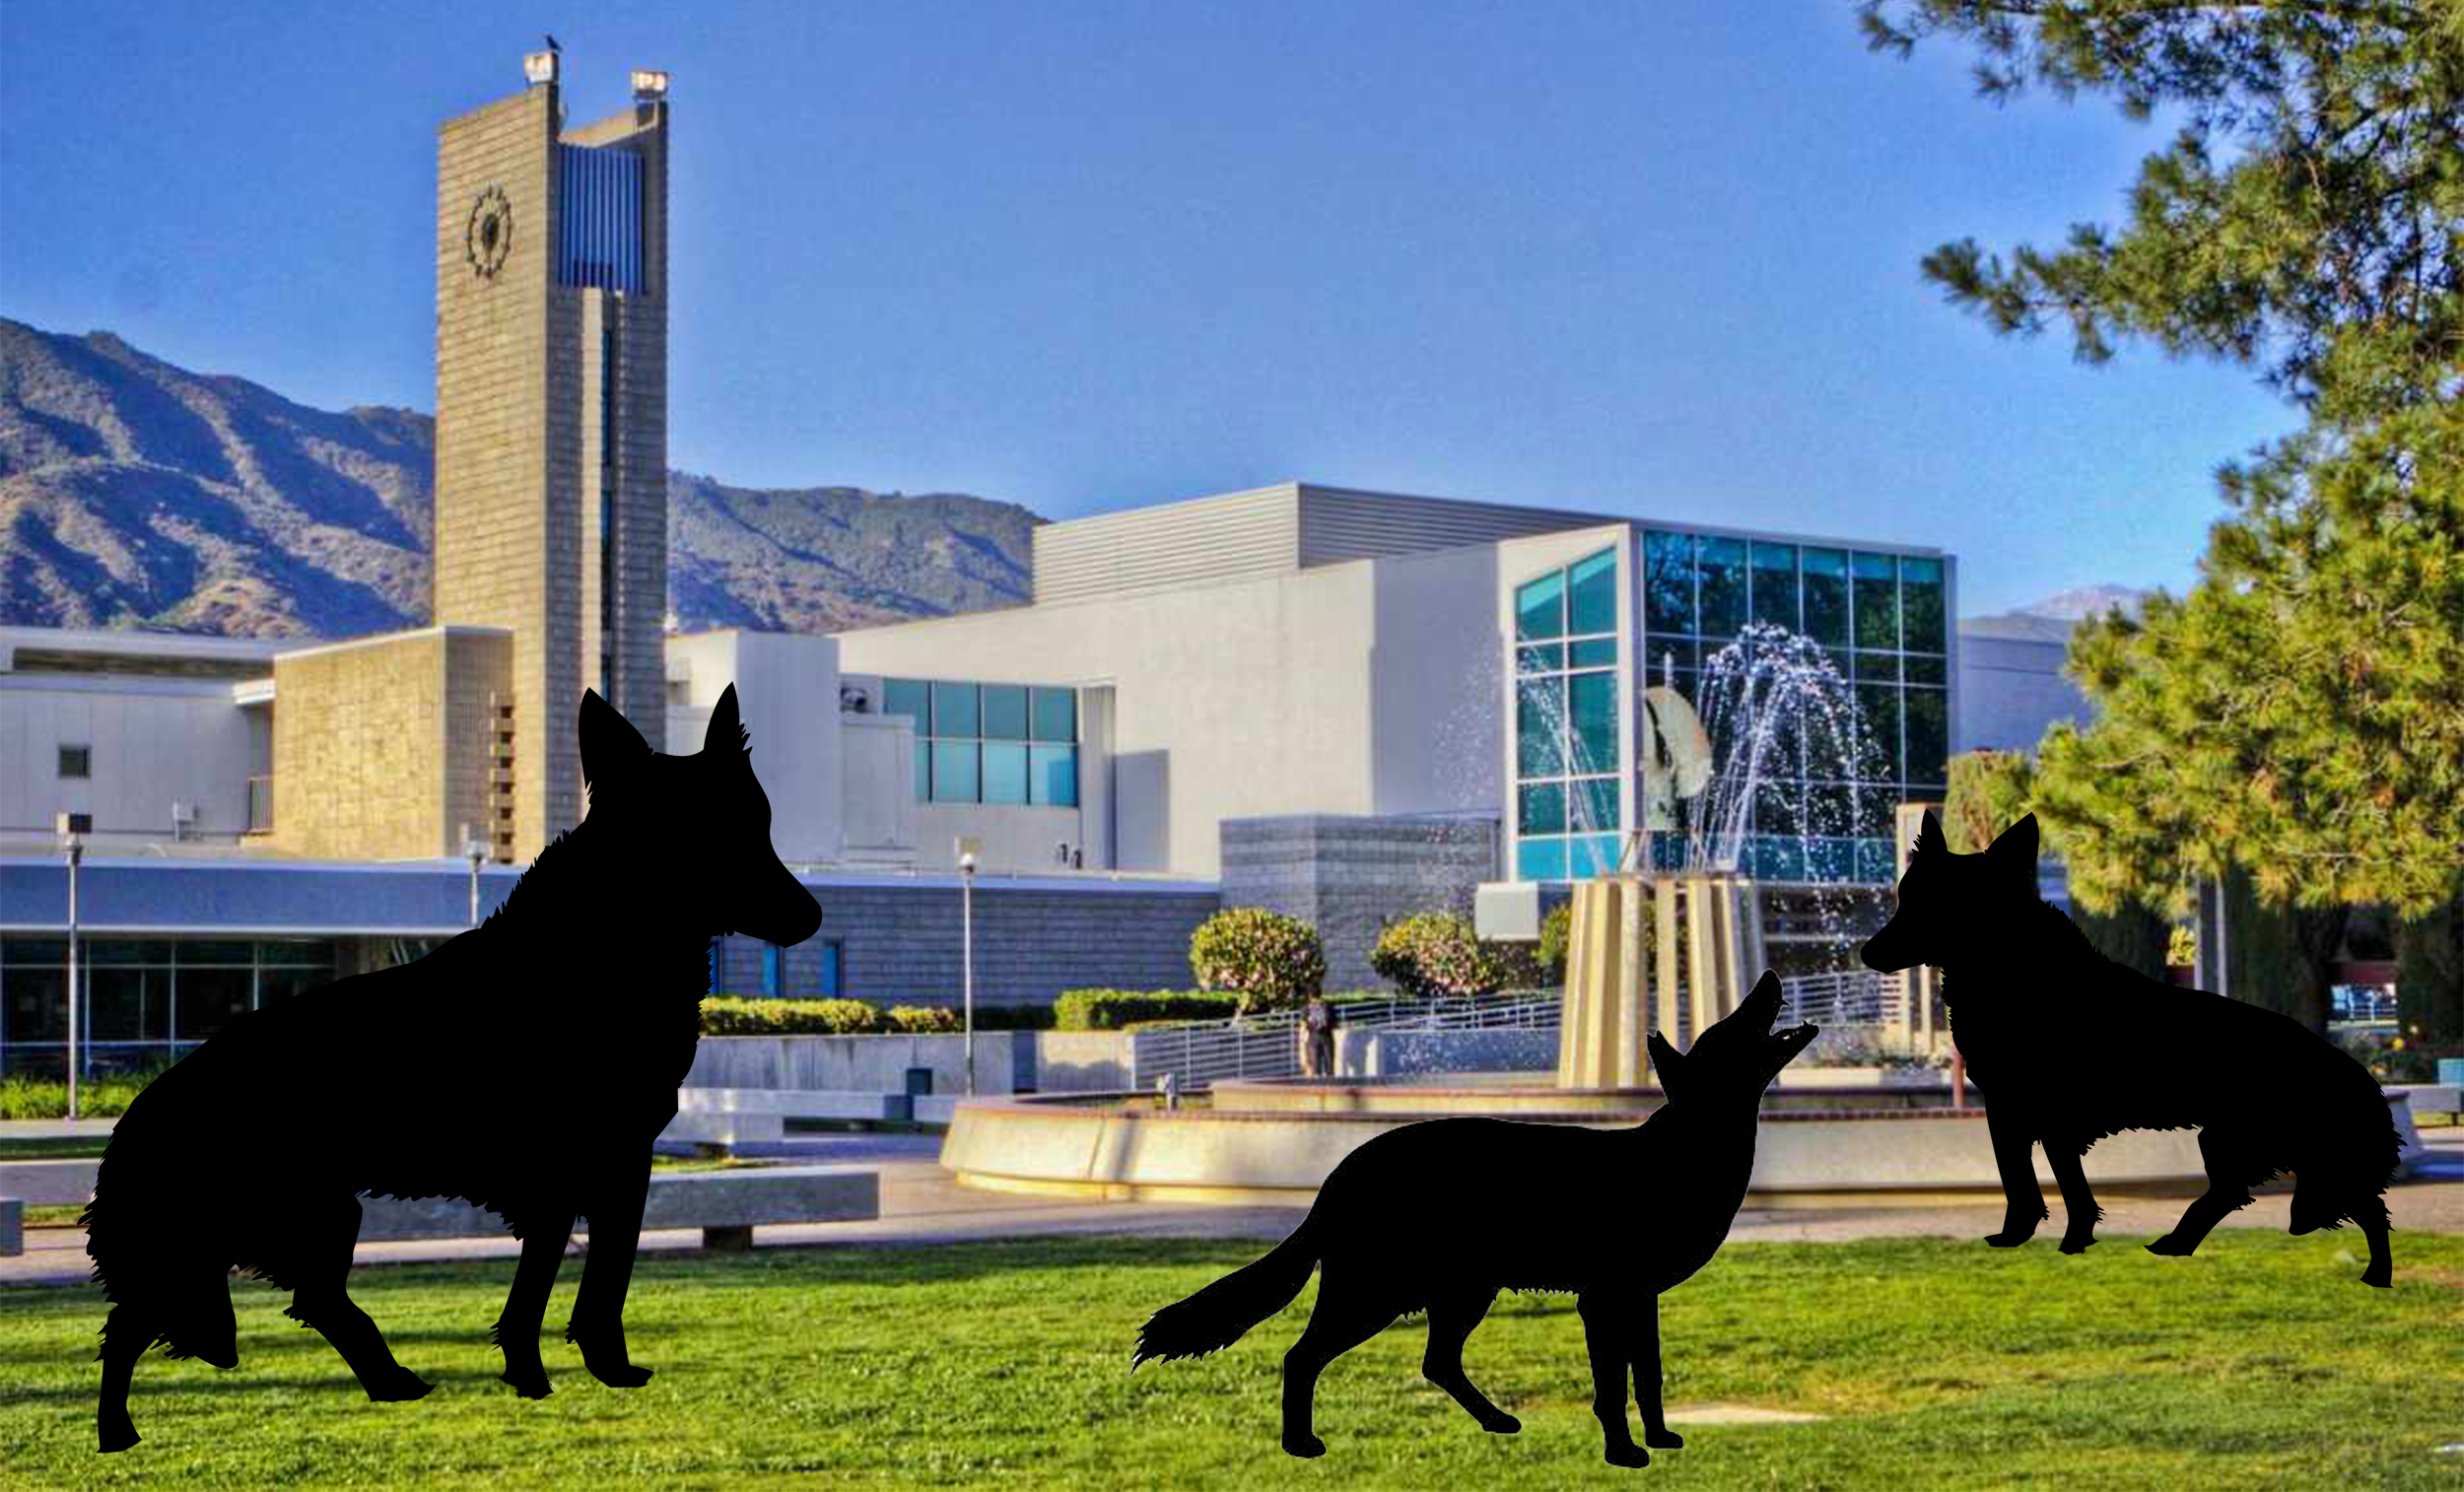 Coyotes found roaming around campus